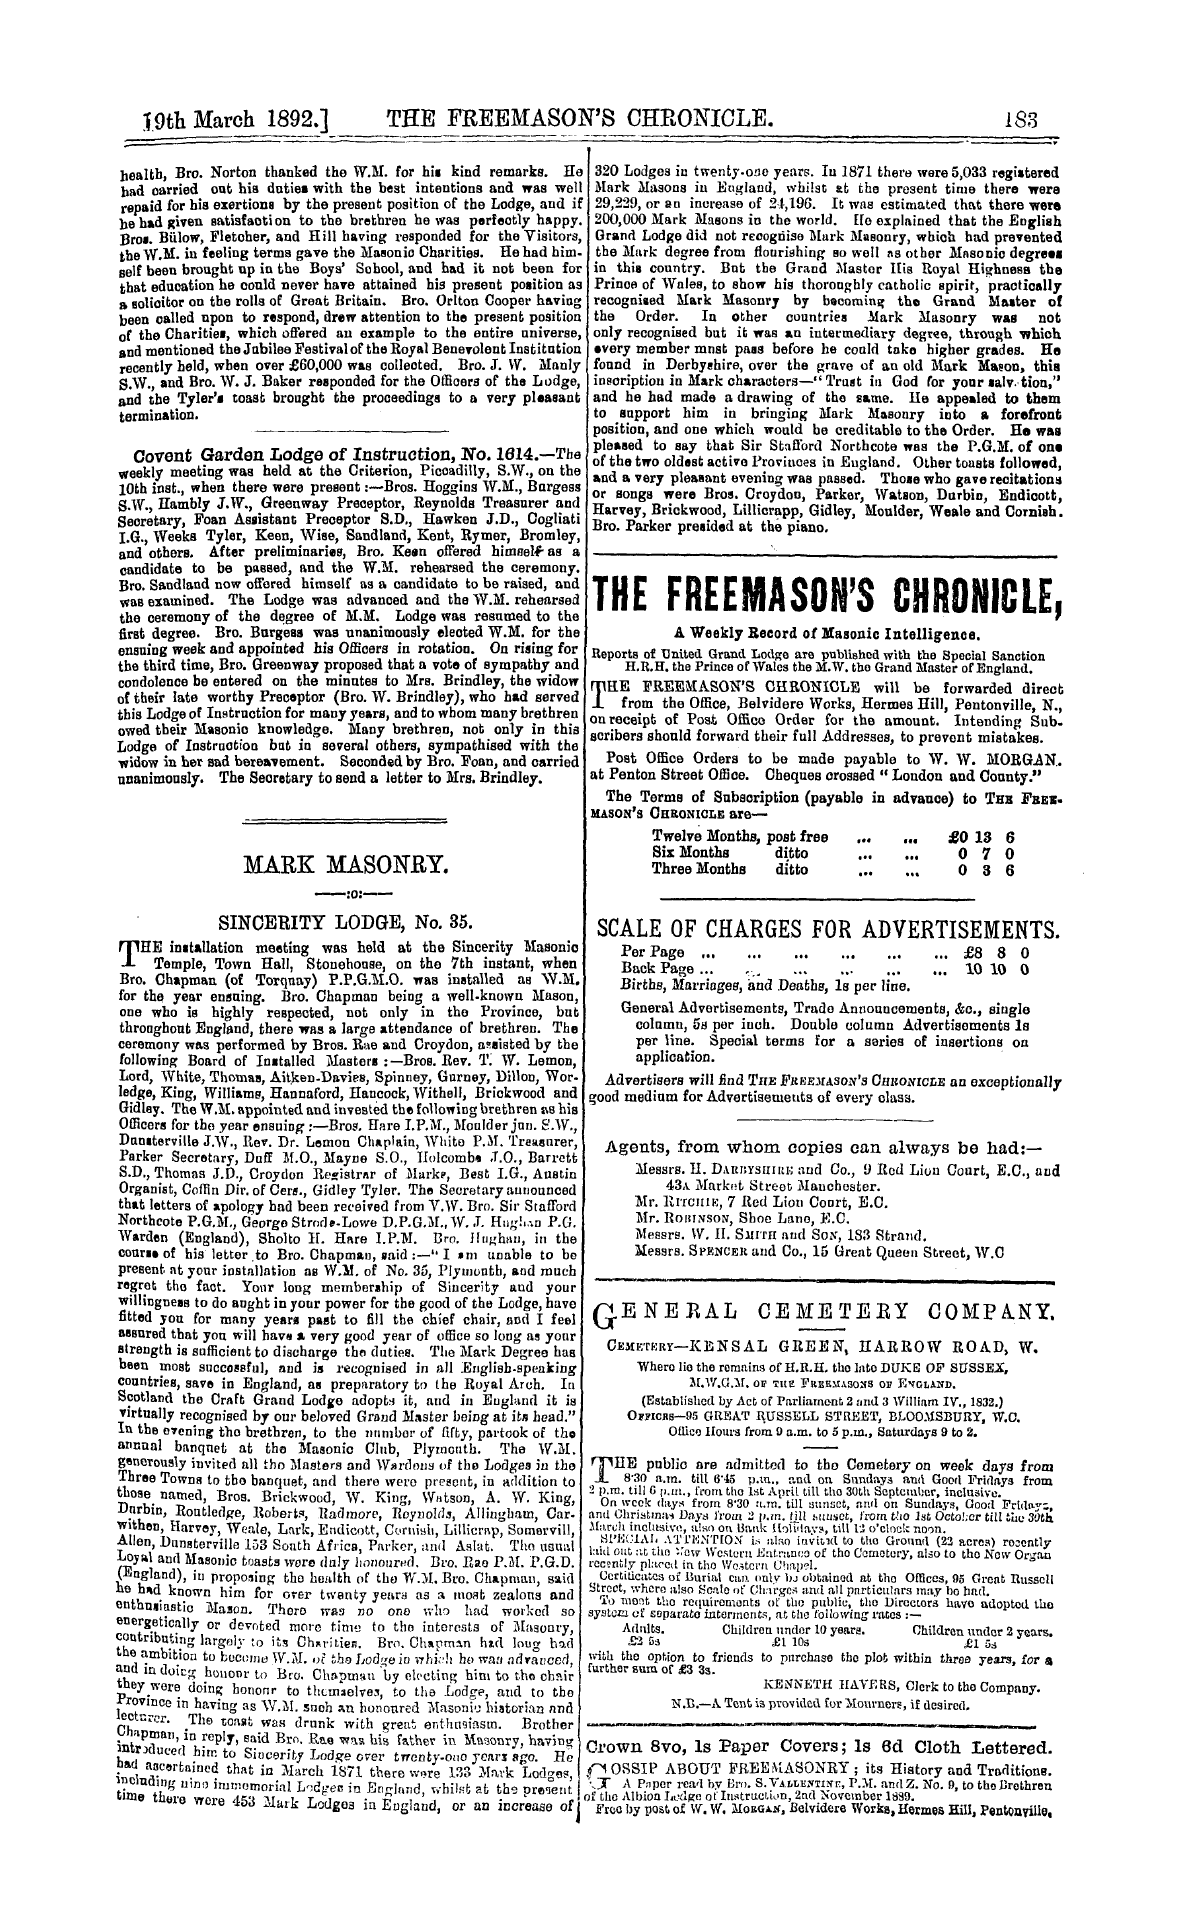 The Freemason's Chronicle: 1892-03-19 - Mark Masonry.